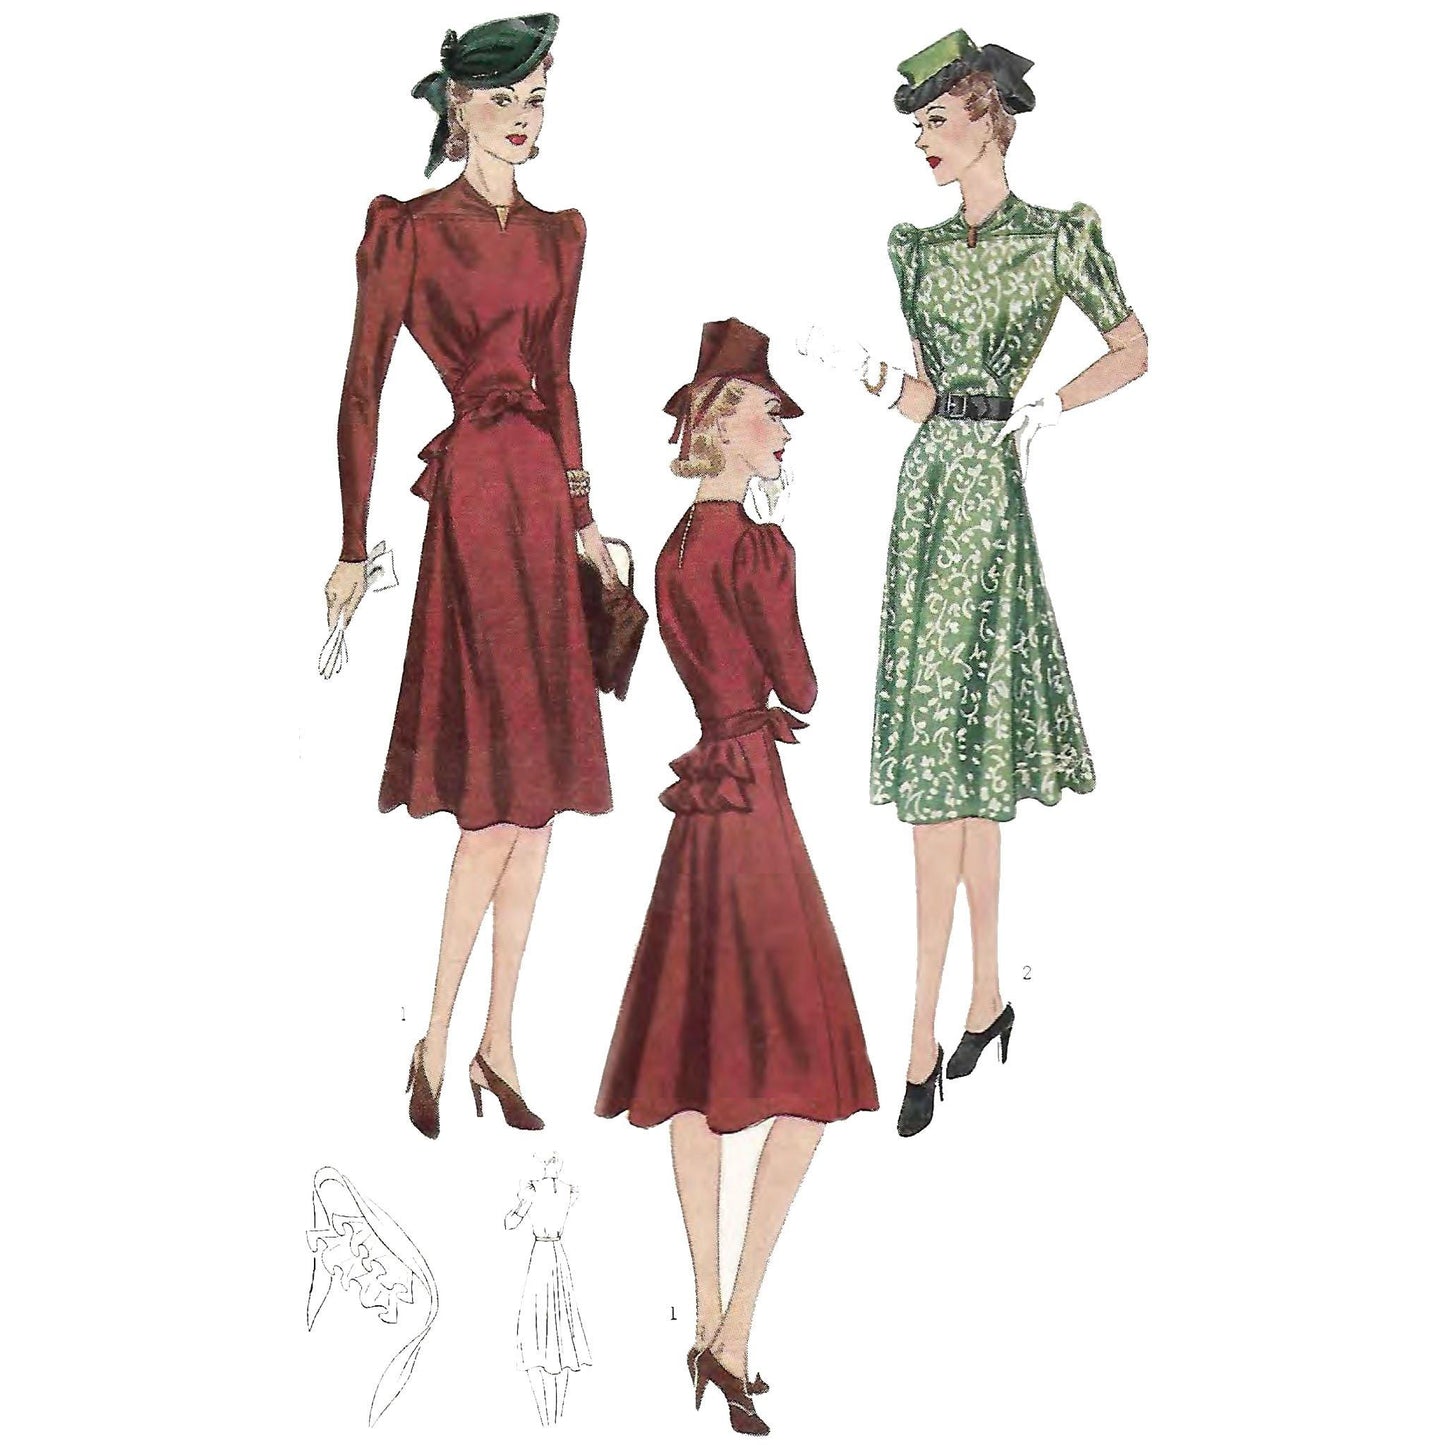 Women wearing 1940s gathered dress